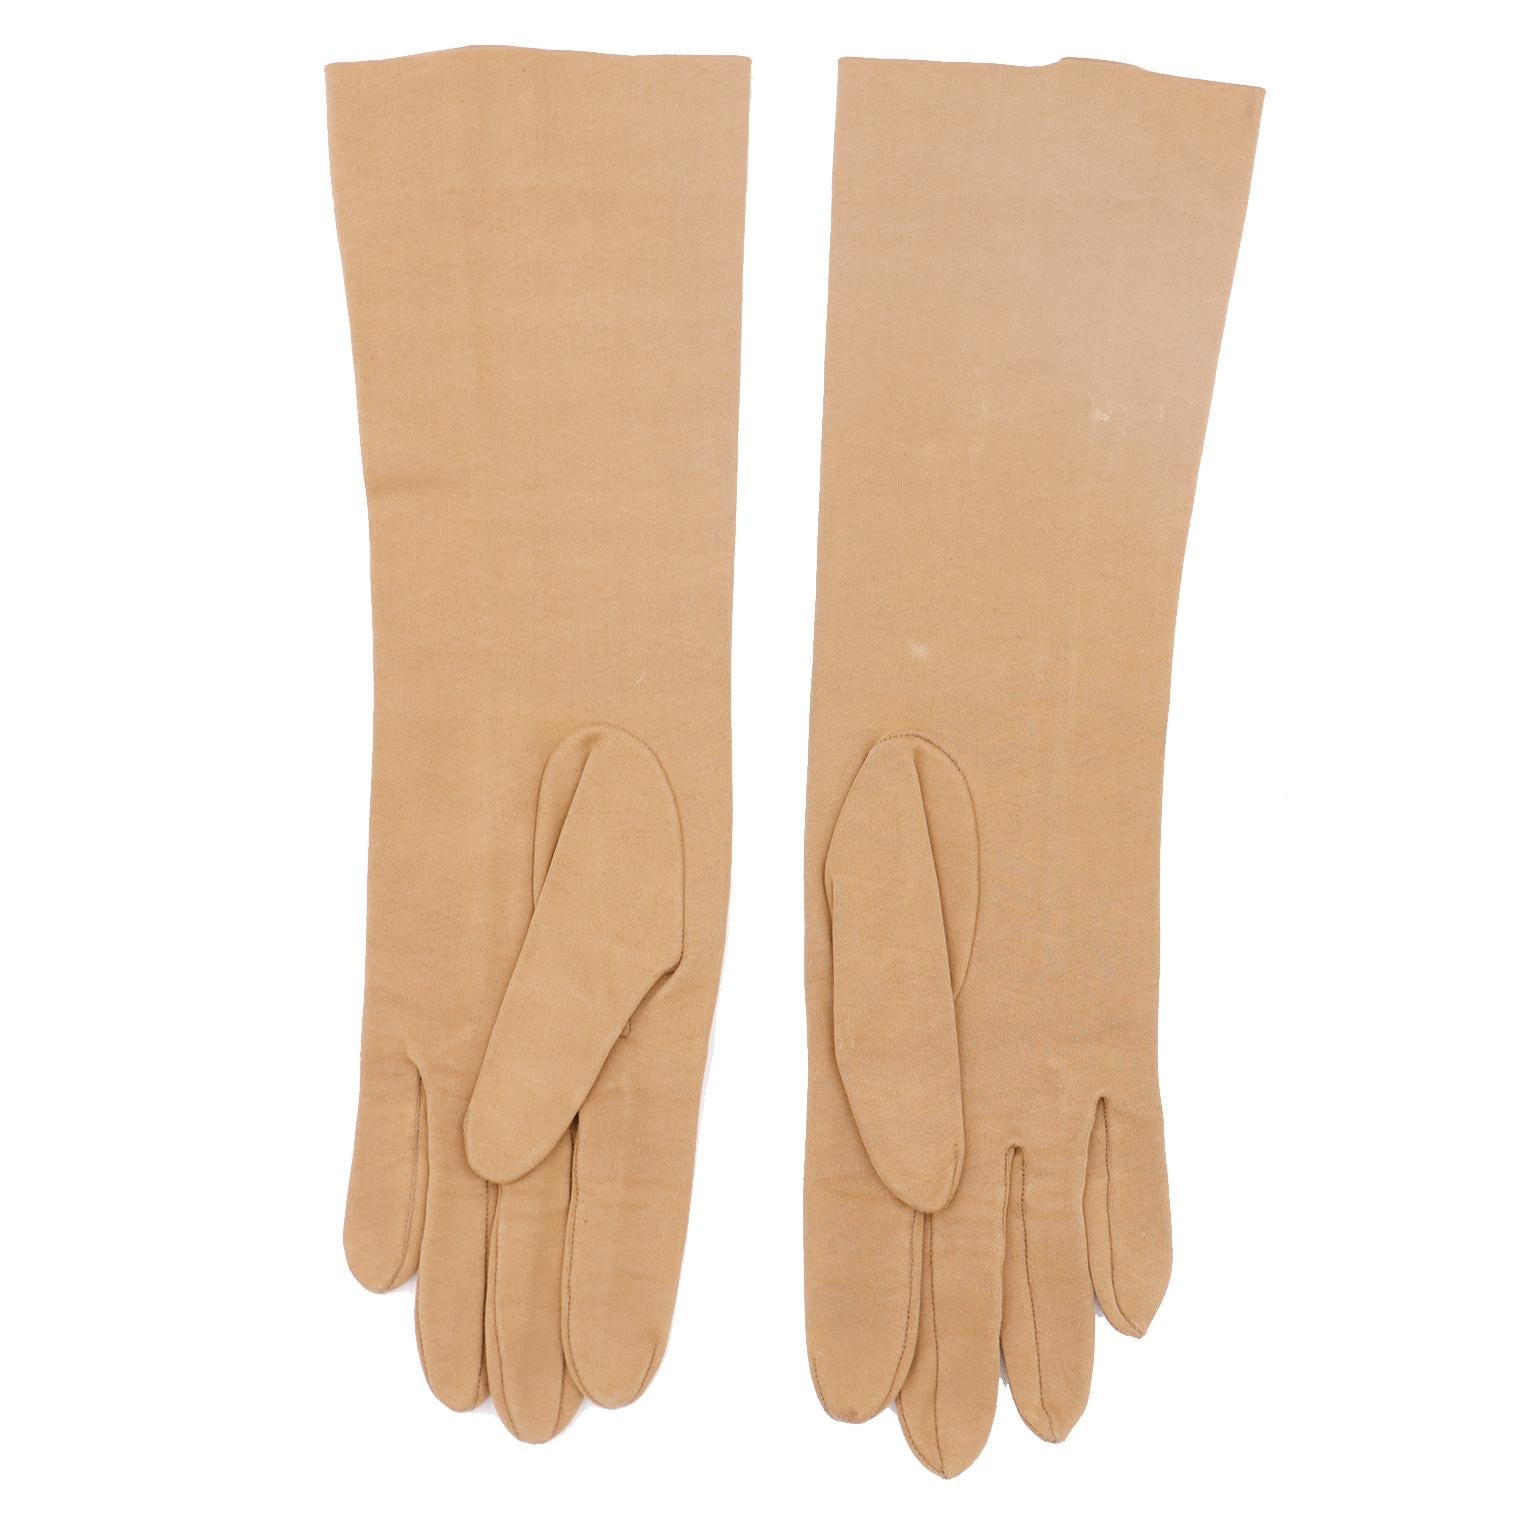 Dies ist ein schönes Paar von Vintage Christian Dior Sea Island Baumwollhandschuhe aus den 1970er Jahren. Die Handschuhe sind in einem hübschen, hellen Braun-Beige gehalten und wurden in Frankreich hergestellt. Vom Mittelfinger bis zum Saum ist eine